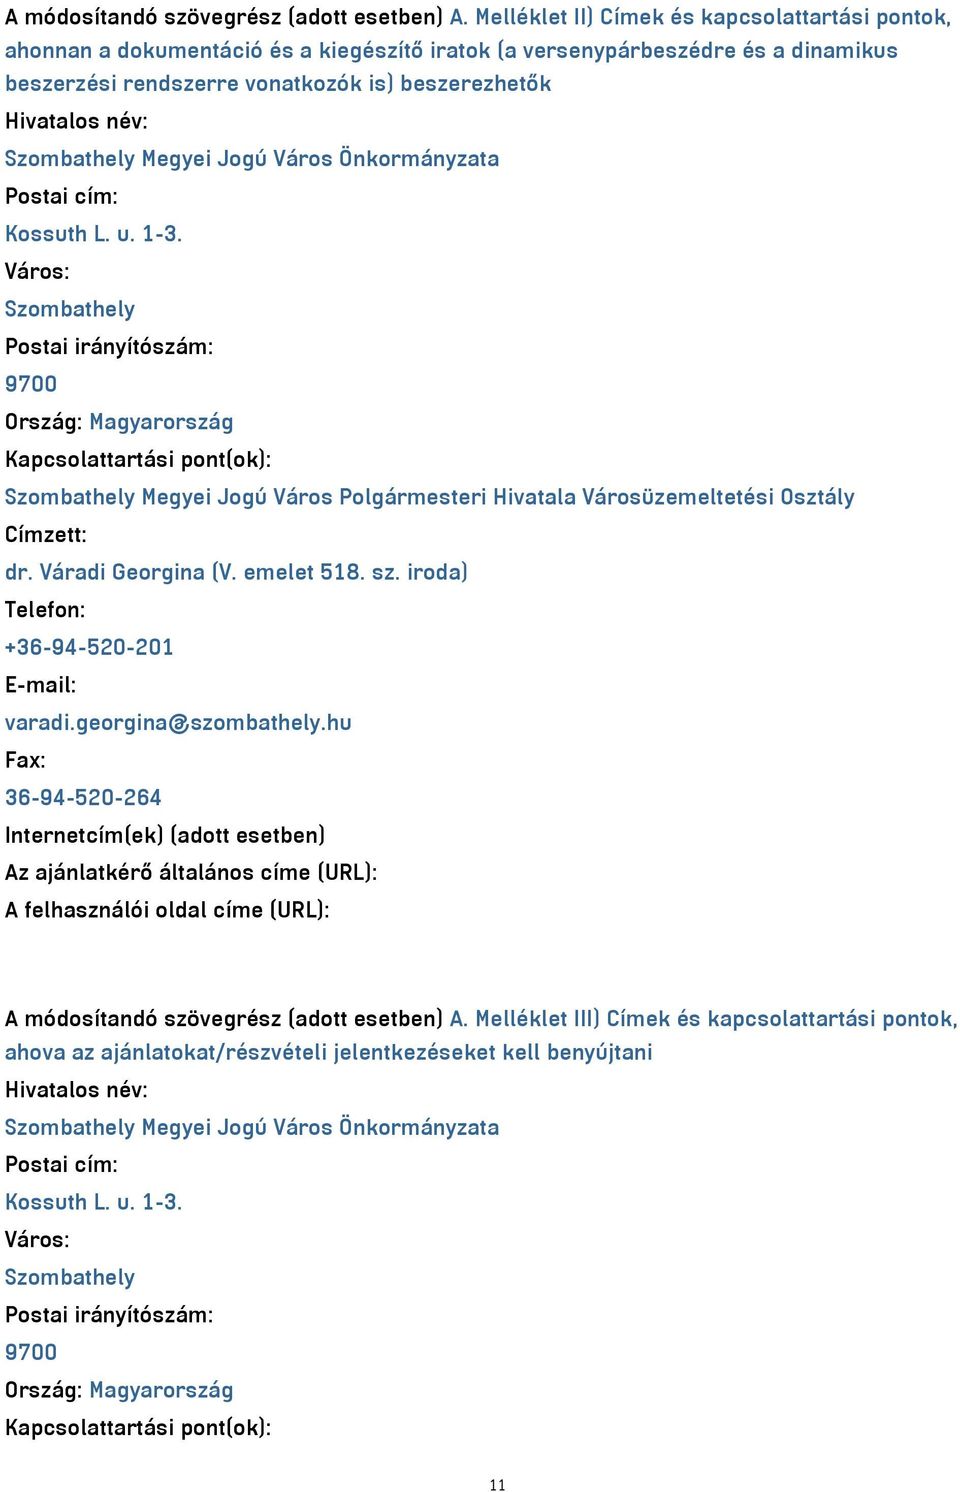 Szombathely Megyei Jogú Város Önkormányzata Postai cím: Kossuth L. u. 1-3.